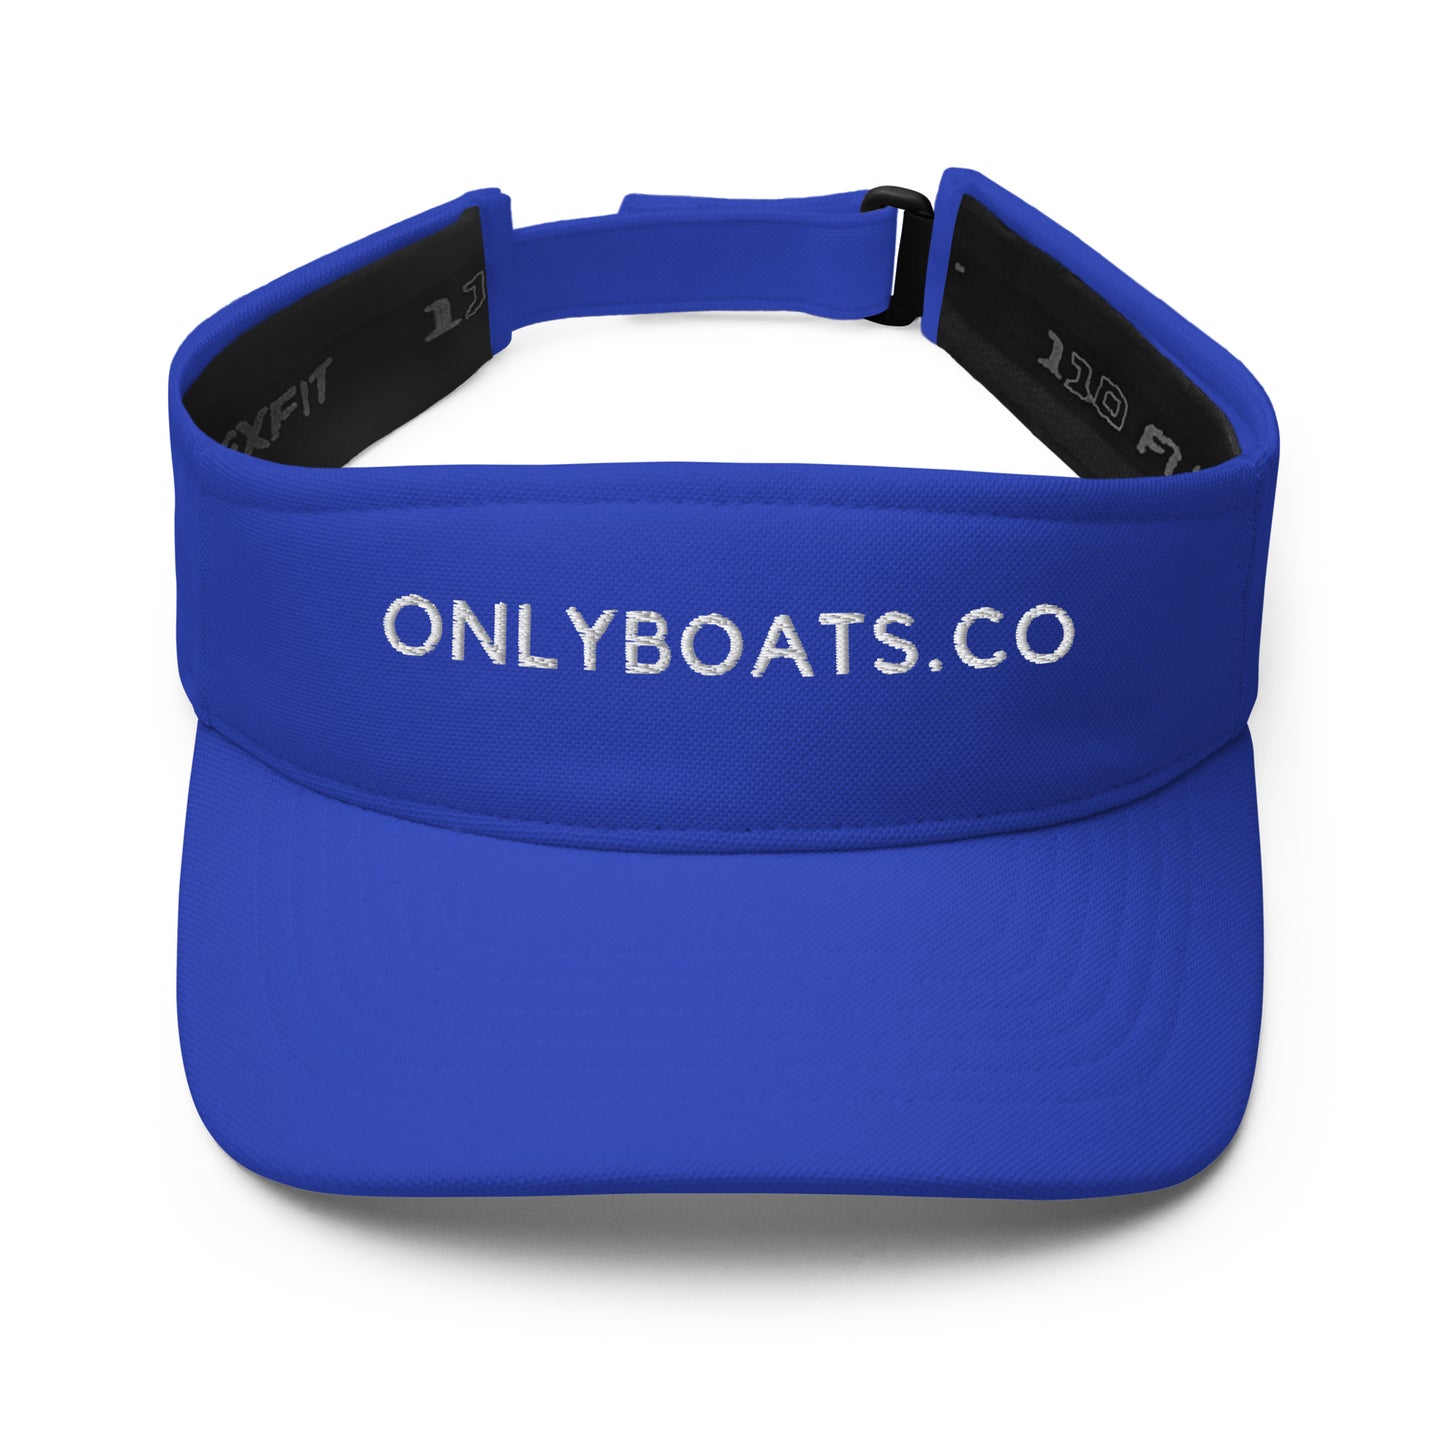 Onlyboats.co Visor